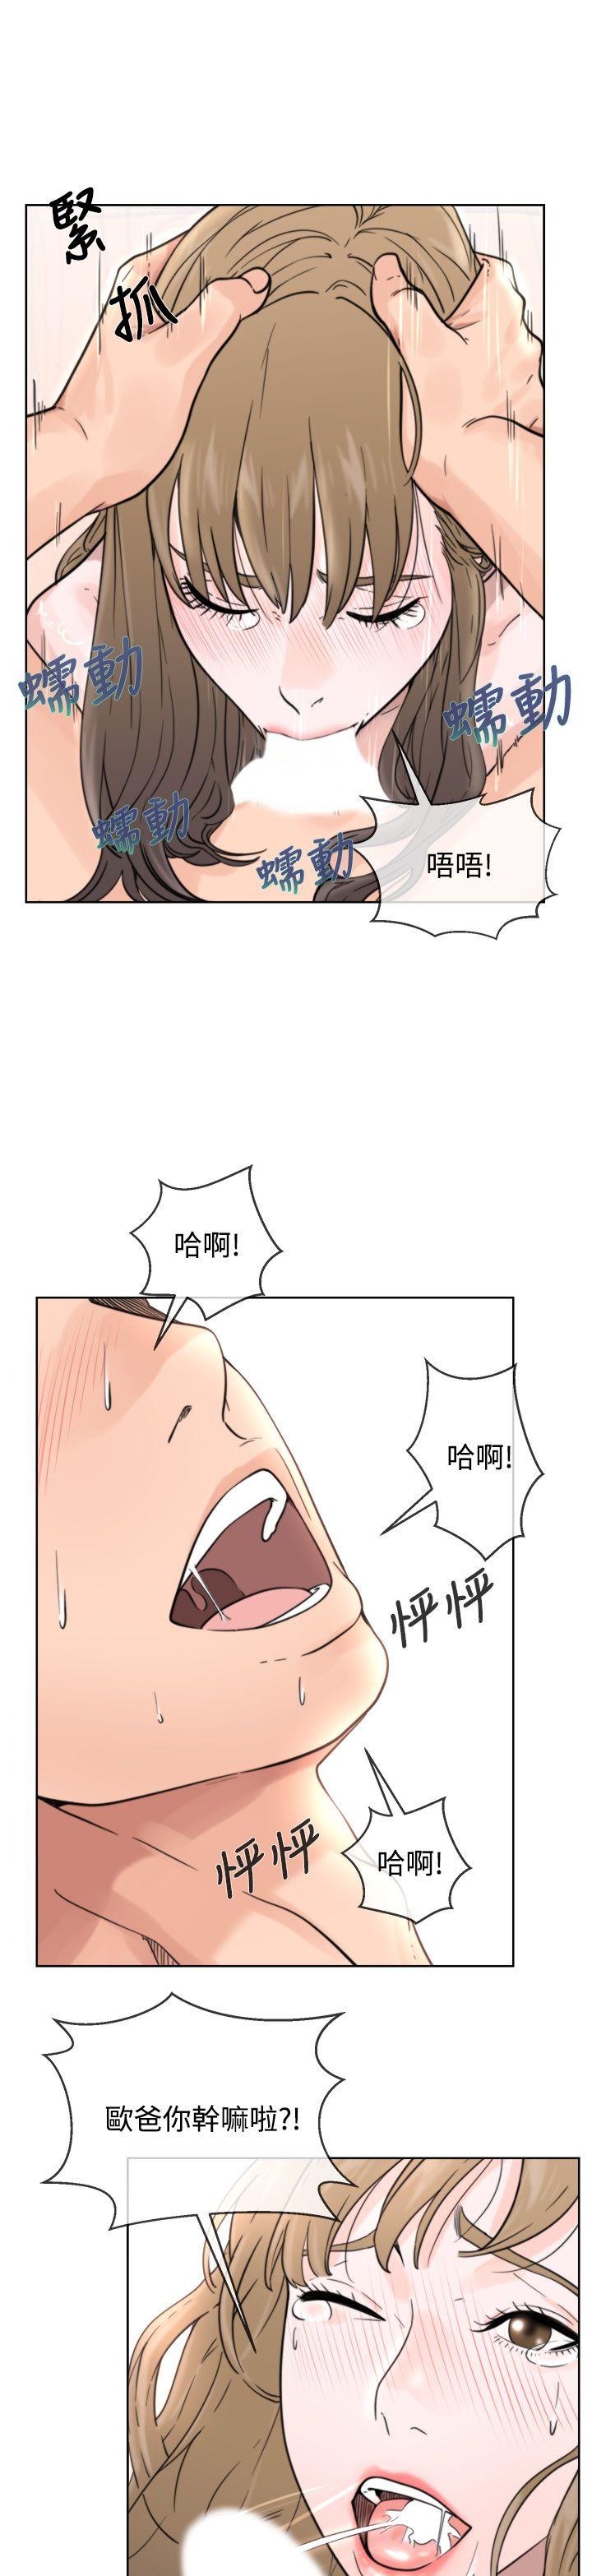 韩国污漫画 青春:逆齡小鮮肉 第1话 35